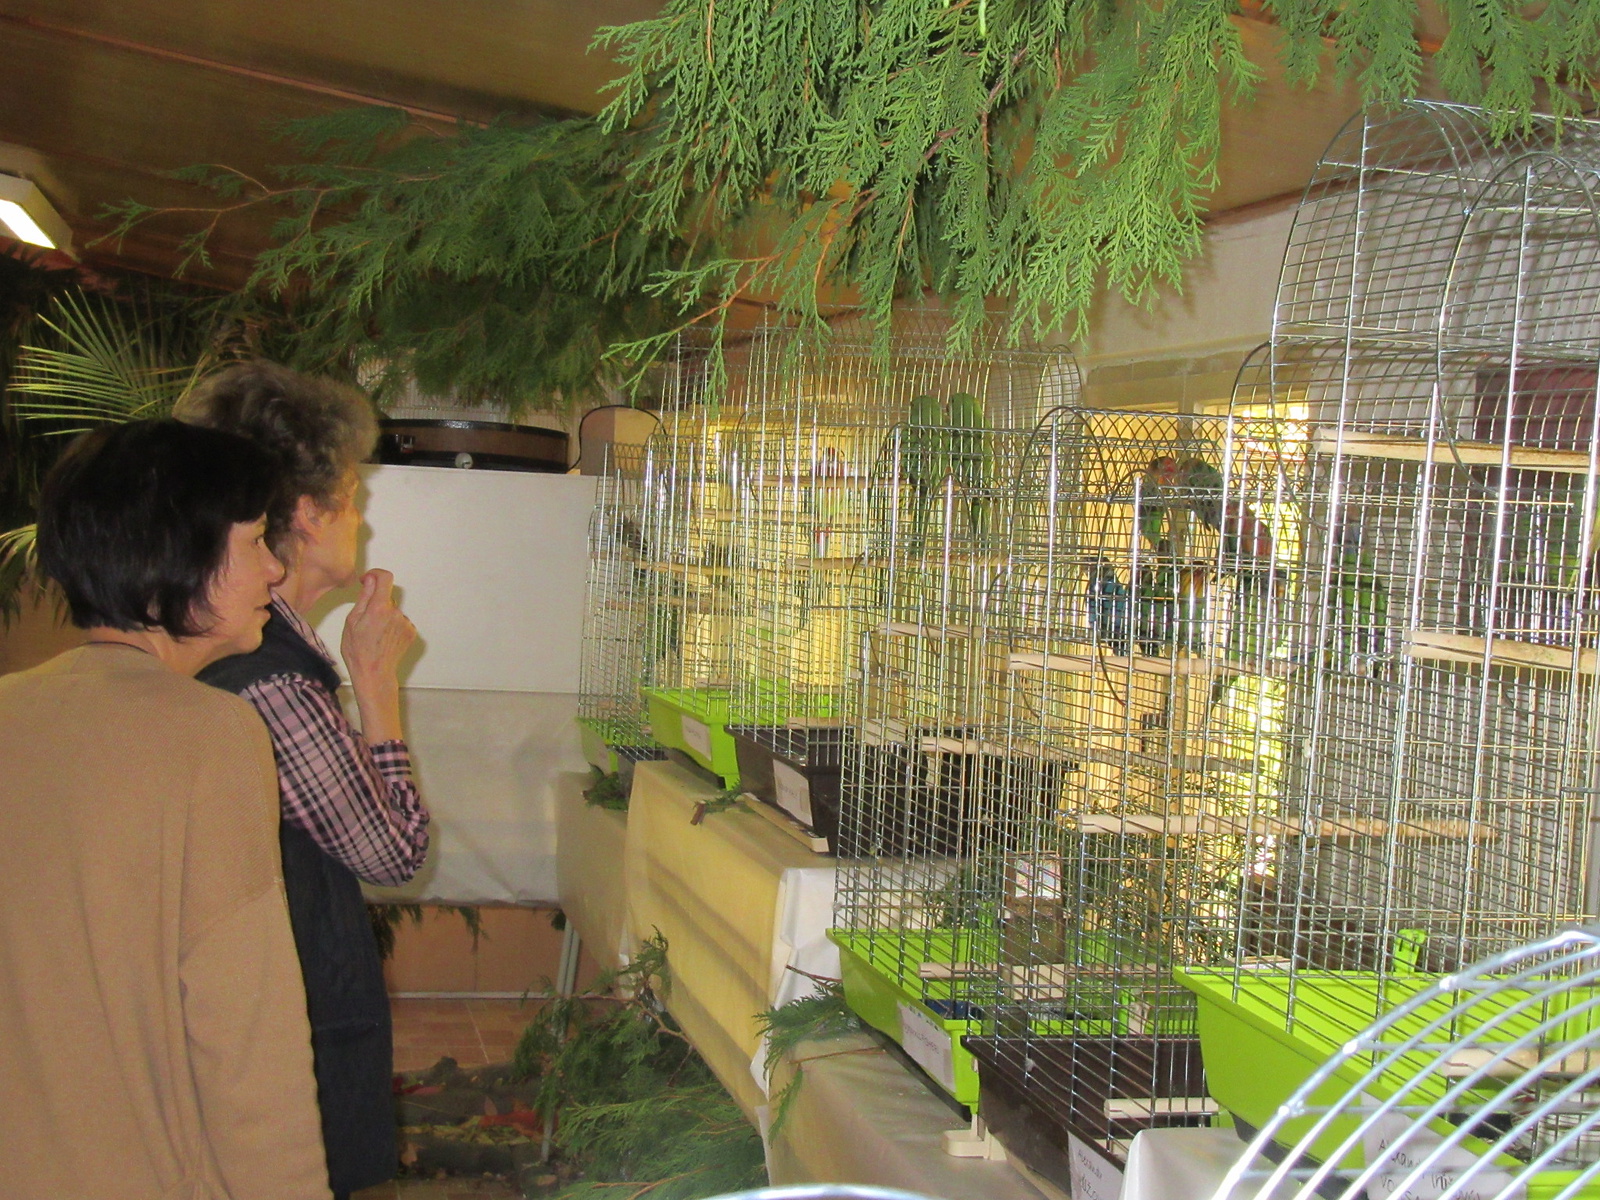 OBRAZEM: Na šedesát papoušků má přechodný domov v Botanické zahradě Tábor -  Táborský deník